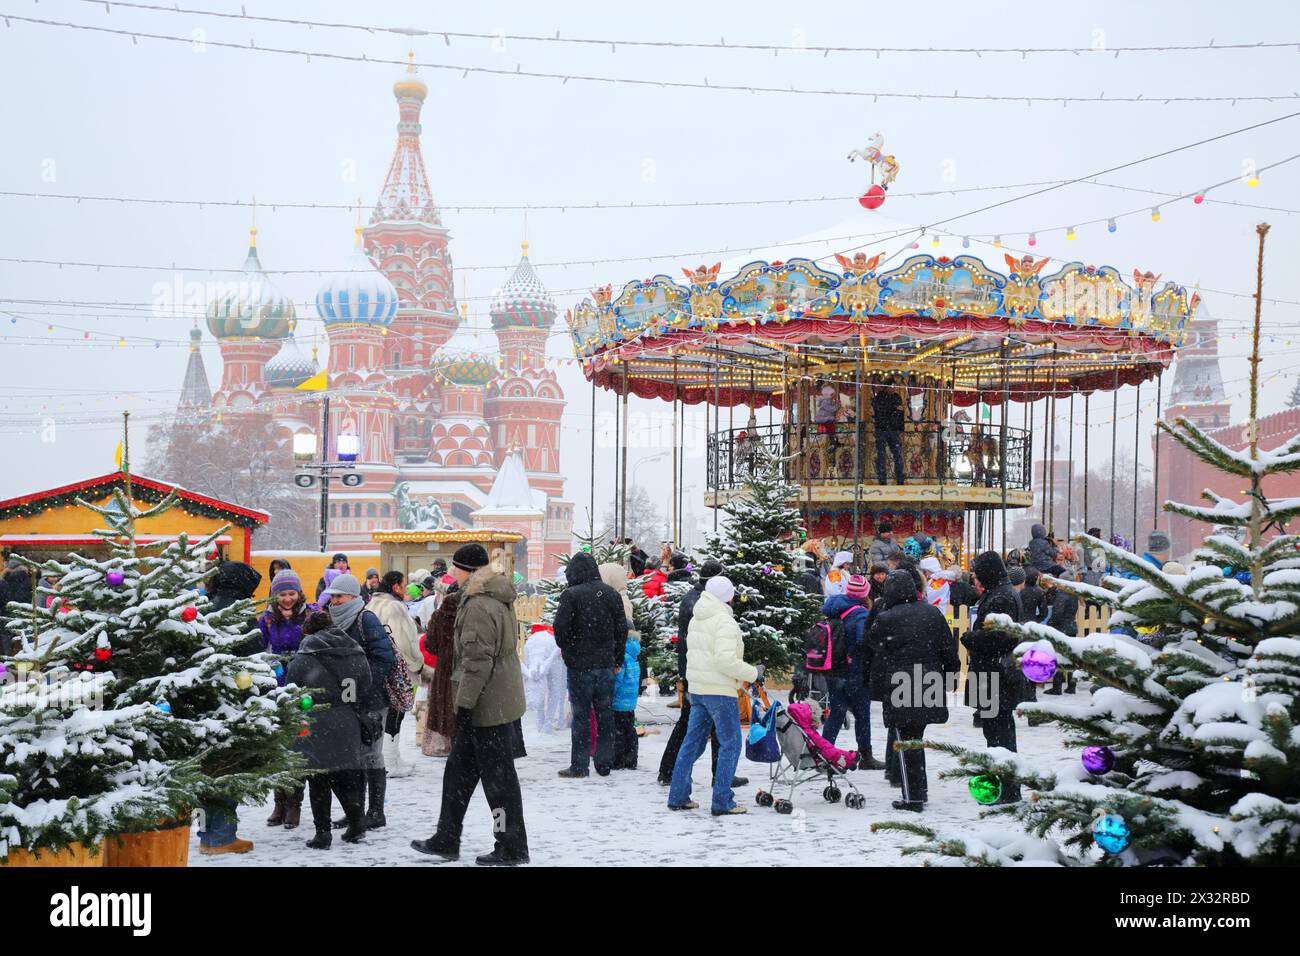 MOSKAU, RUSSLAND - 8. Dezember 2013: Menschen laufen in der Nähe von Karussell und St. Basilius Kathedrale während der Weihnachtsmesse (Messefläche ca. 2.000 qm) Stockfoto